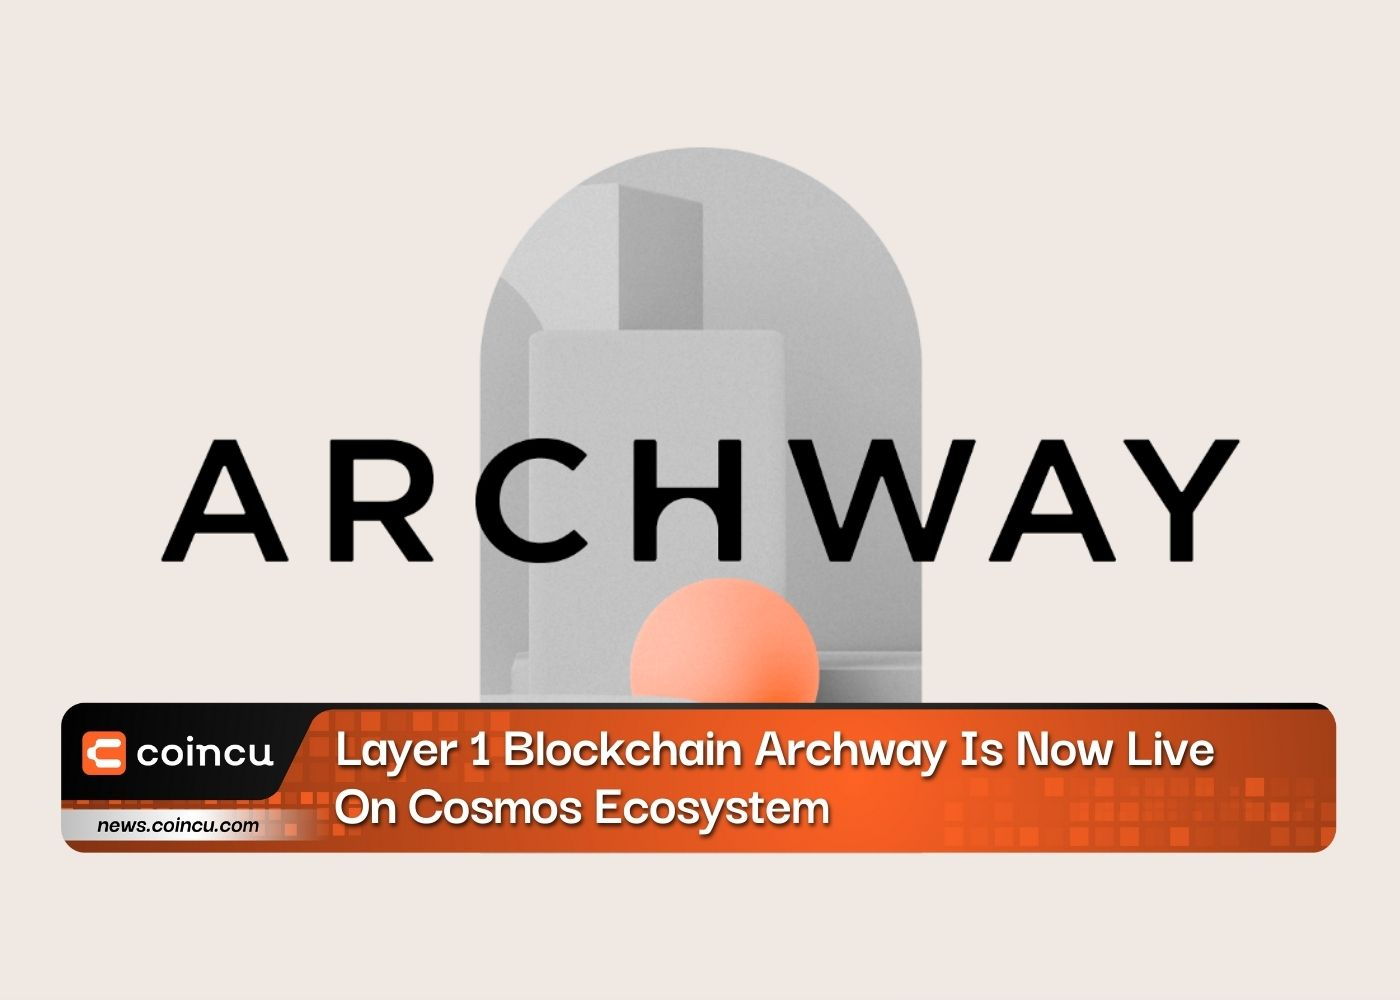 Blockchain Archway уровня 1 теперь работает в экосистеме Cosmos